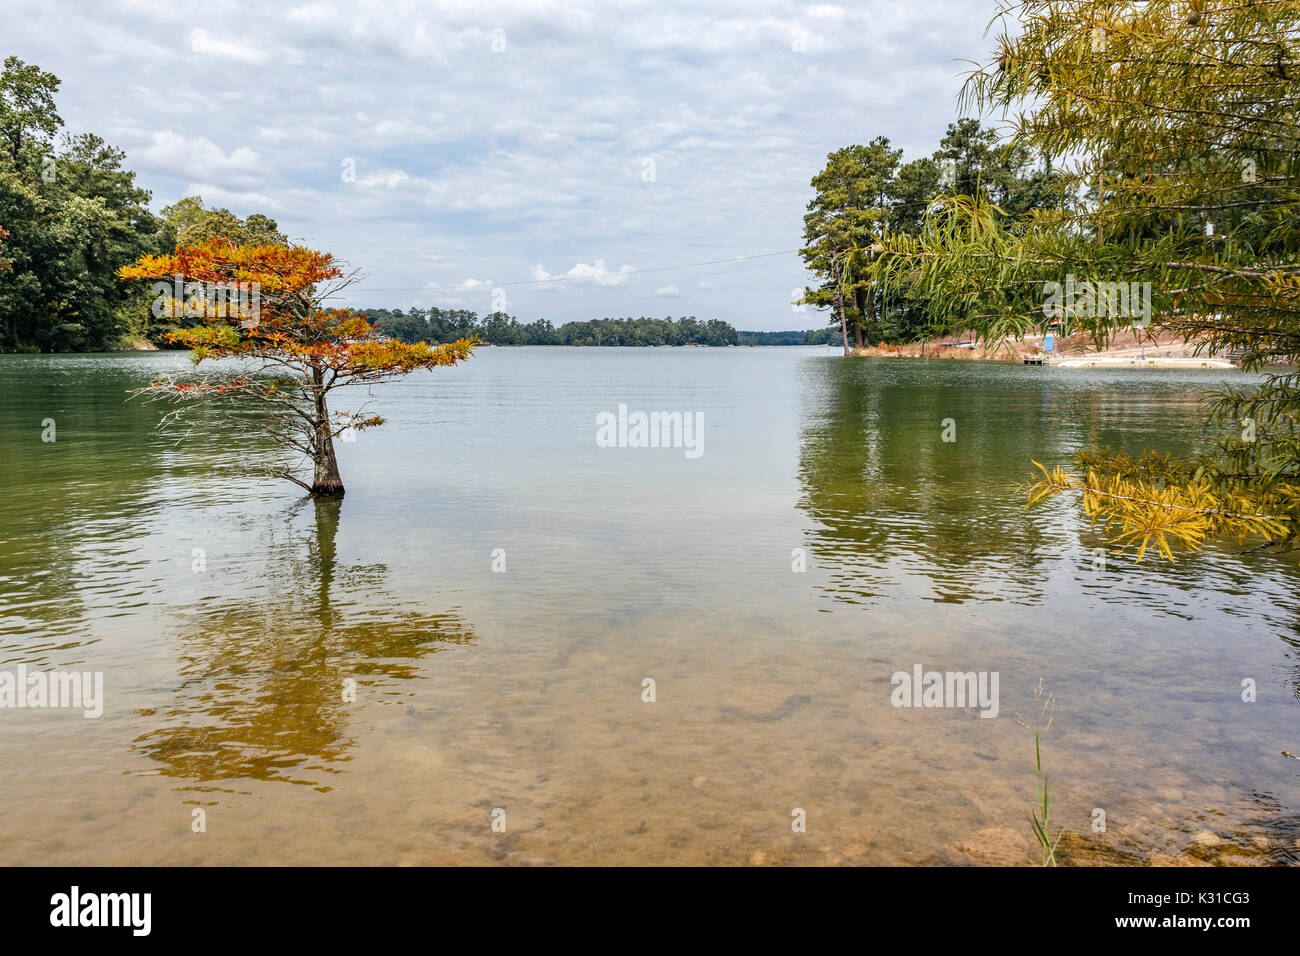 L'eau calme sur le lac martin, Alabama, Etats-Unis, montrant le rivage bordé d'arbres. Banque D'Images